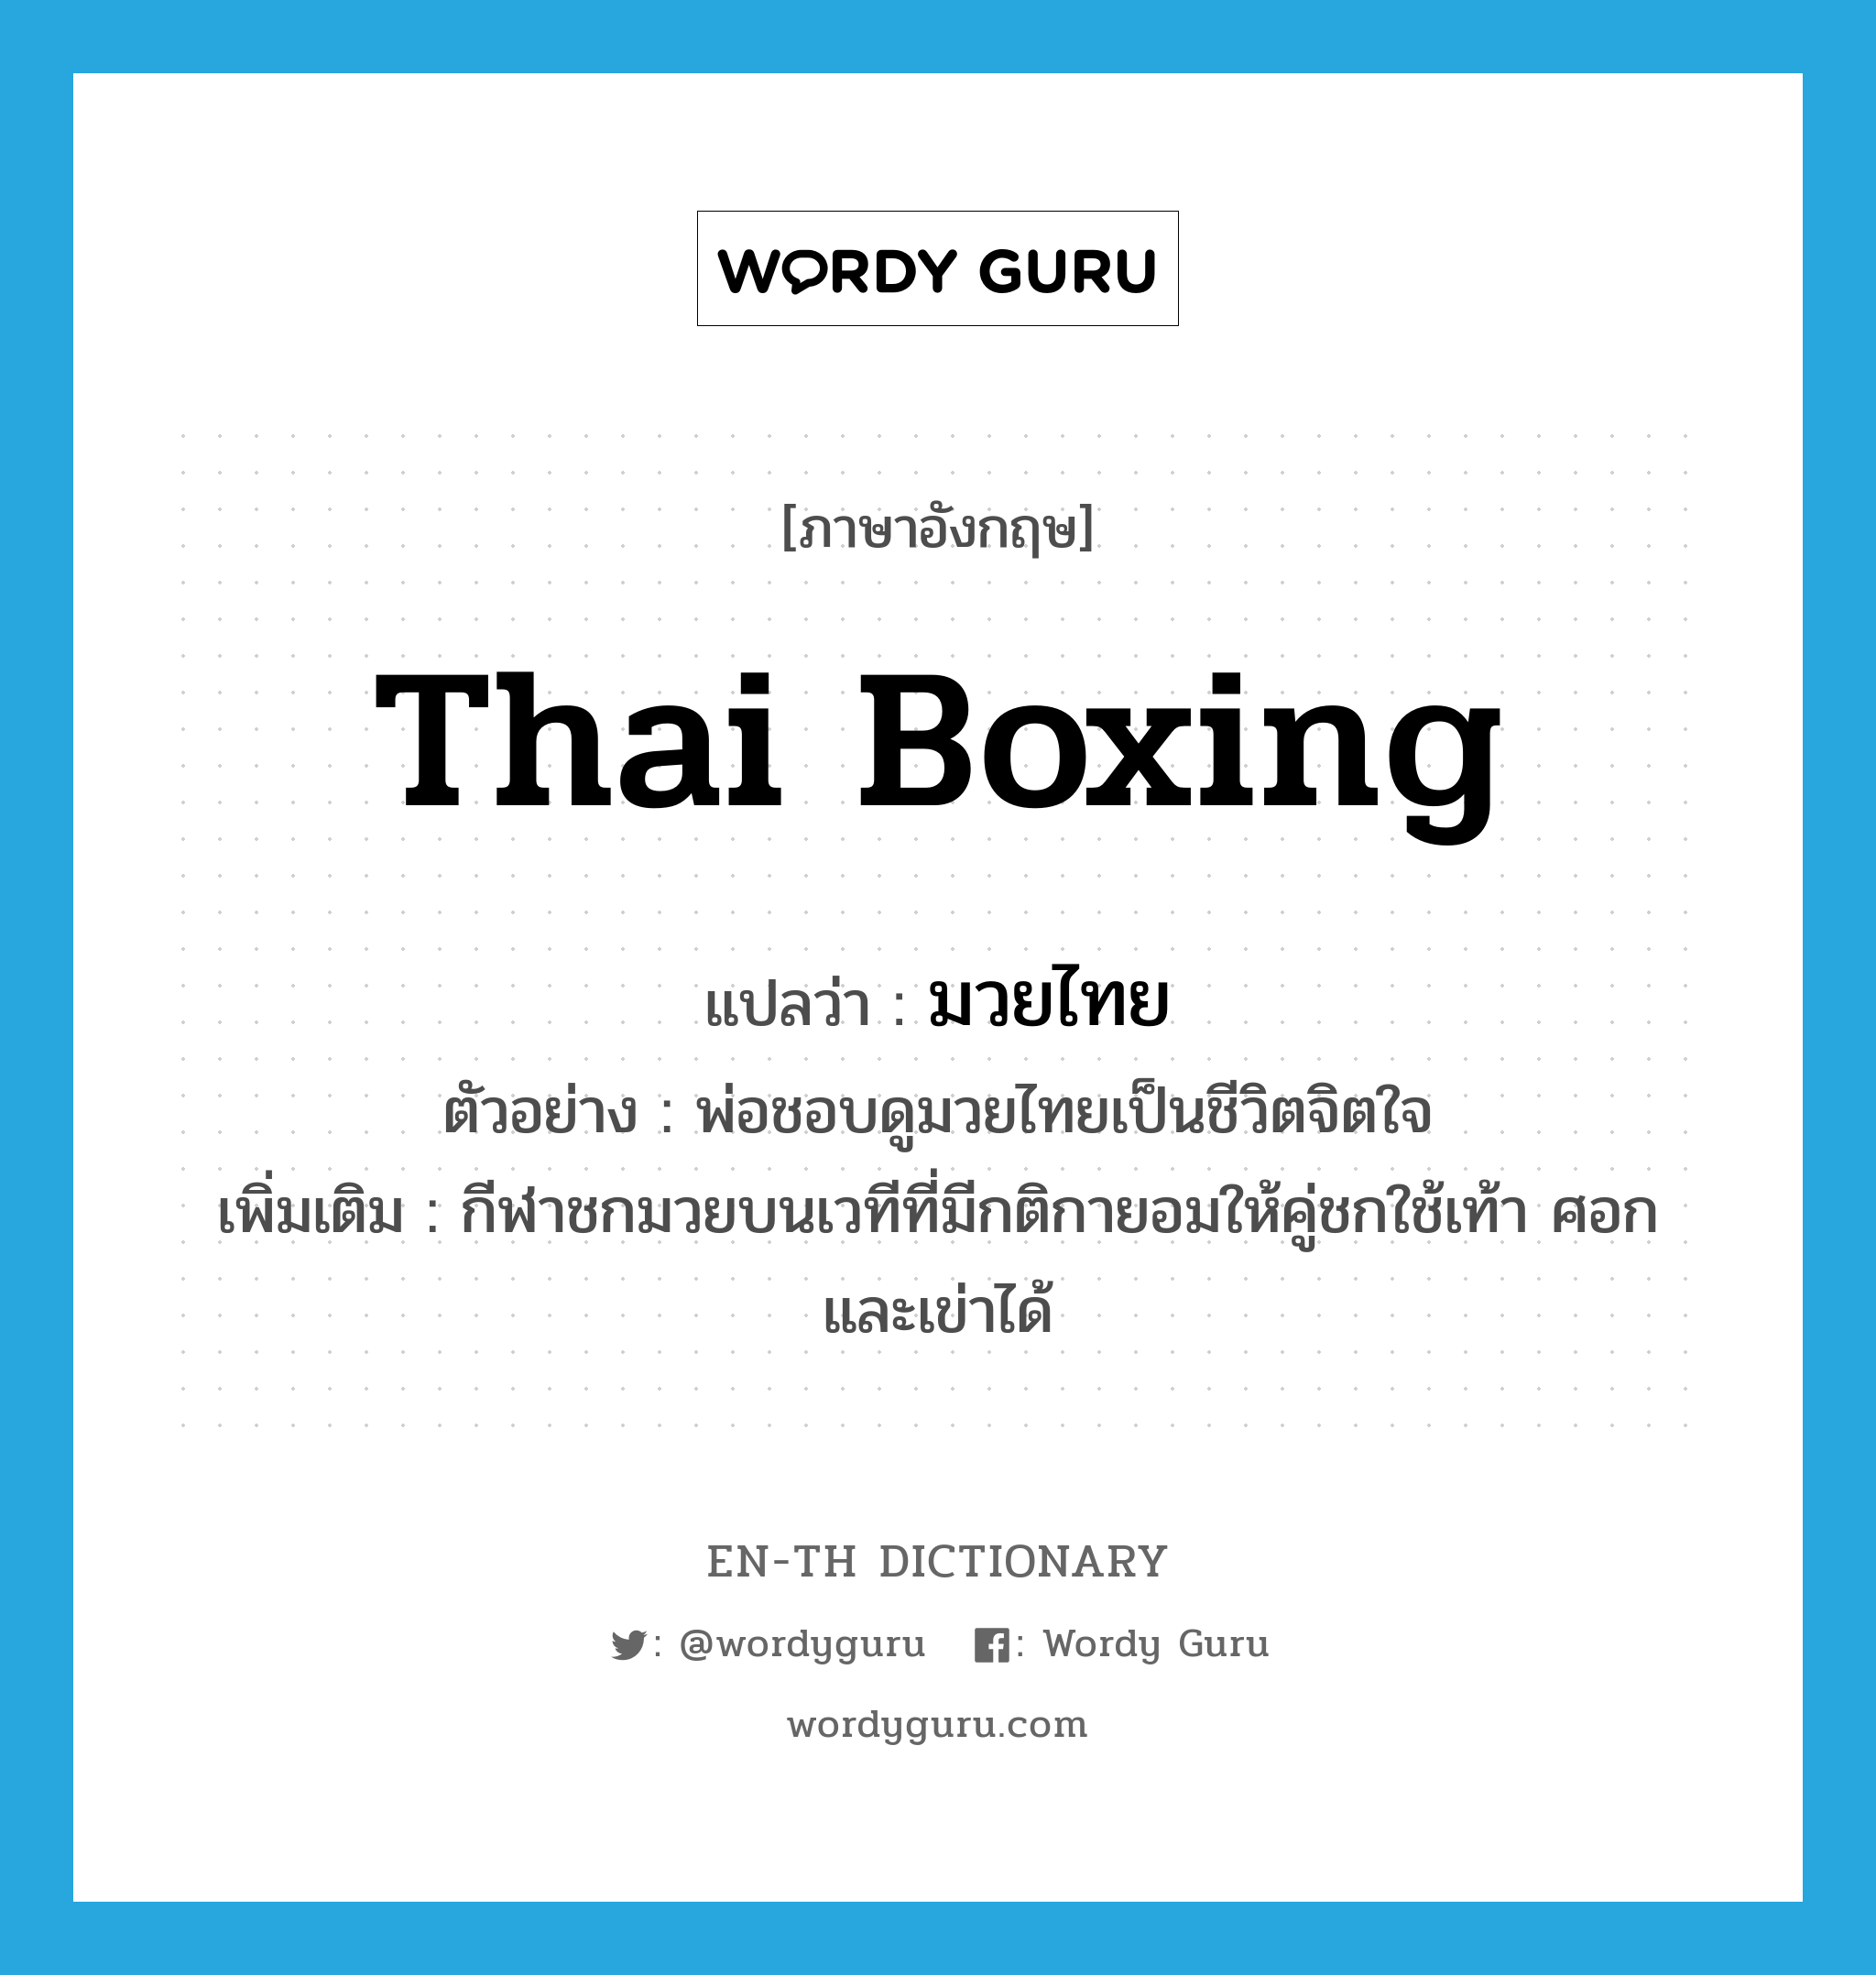 Thai boxing แปลว่า?, คำศัพท์ภาษาอังกฤษ Thai boxing แปลว่า มวยไทย ประเภท N ตัวอย่าง พ่อชอบดูมวยไทยเป็นชีวิตจิตใจ เพิ่มเติม กีฬาชกมวยบนเวทีที่มีกติกายอมให้คู่ชกใช้เท้า ศอก และเข่าได้ หมวด N